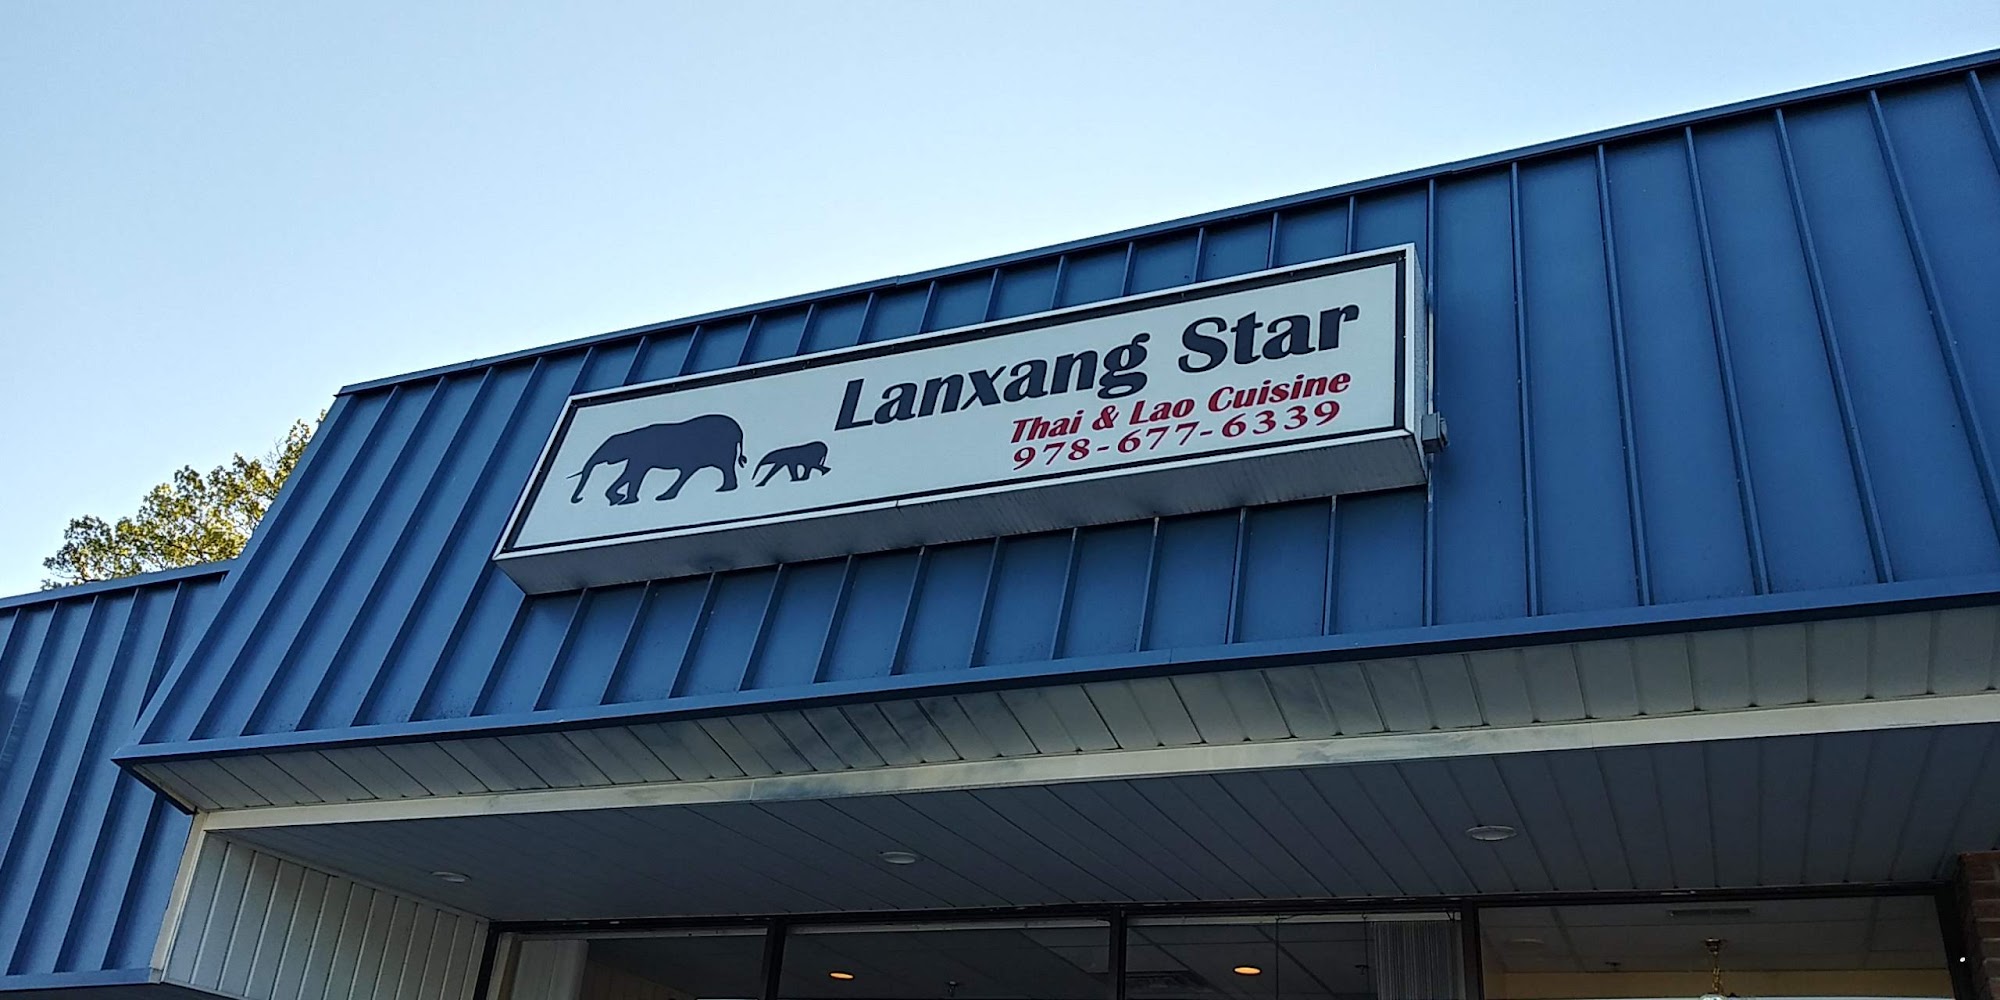 Lanxang Star Restaurant